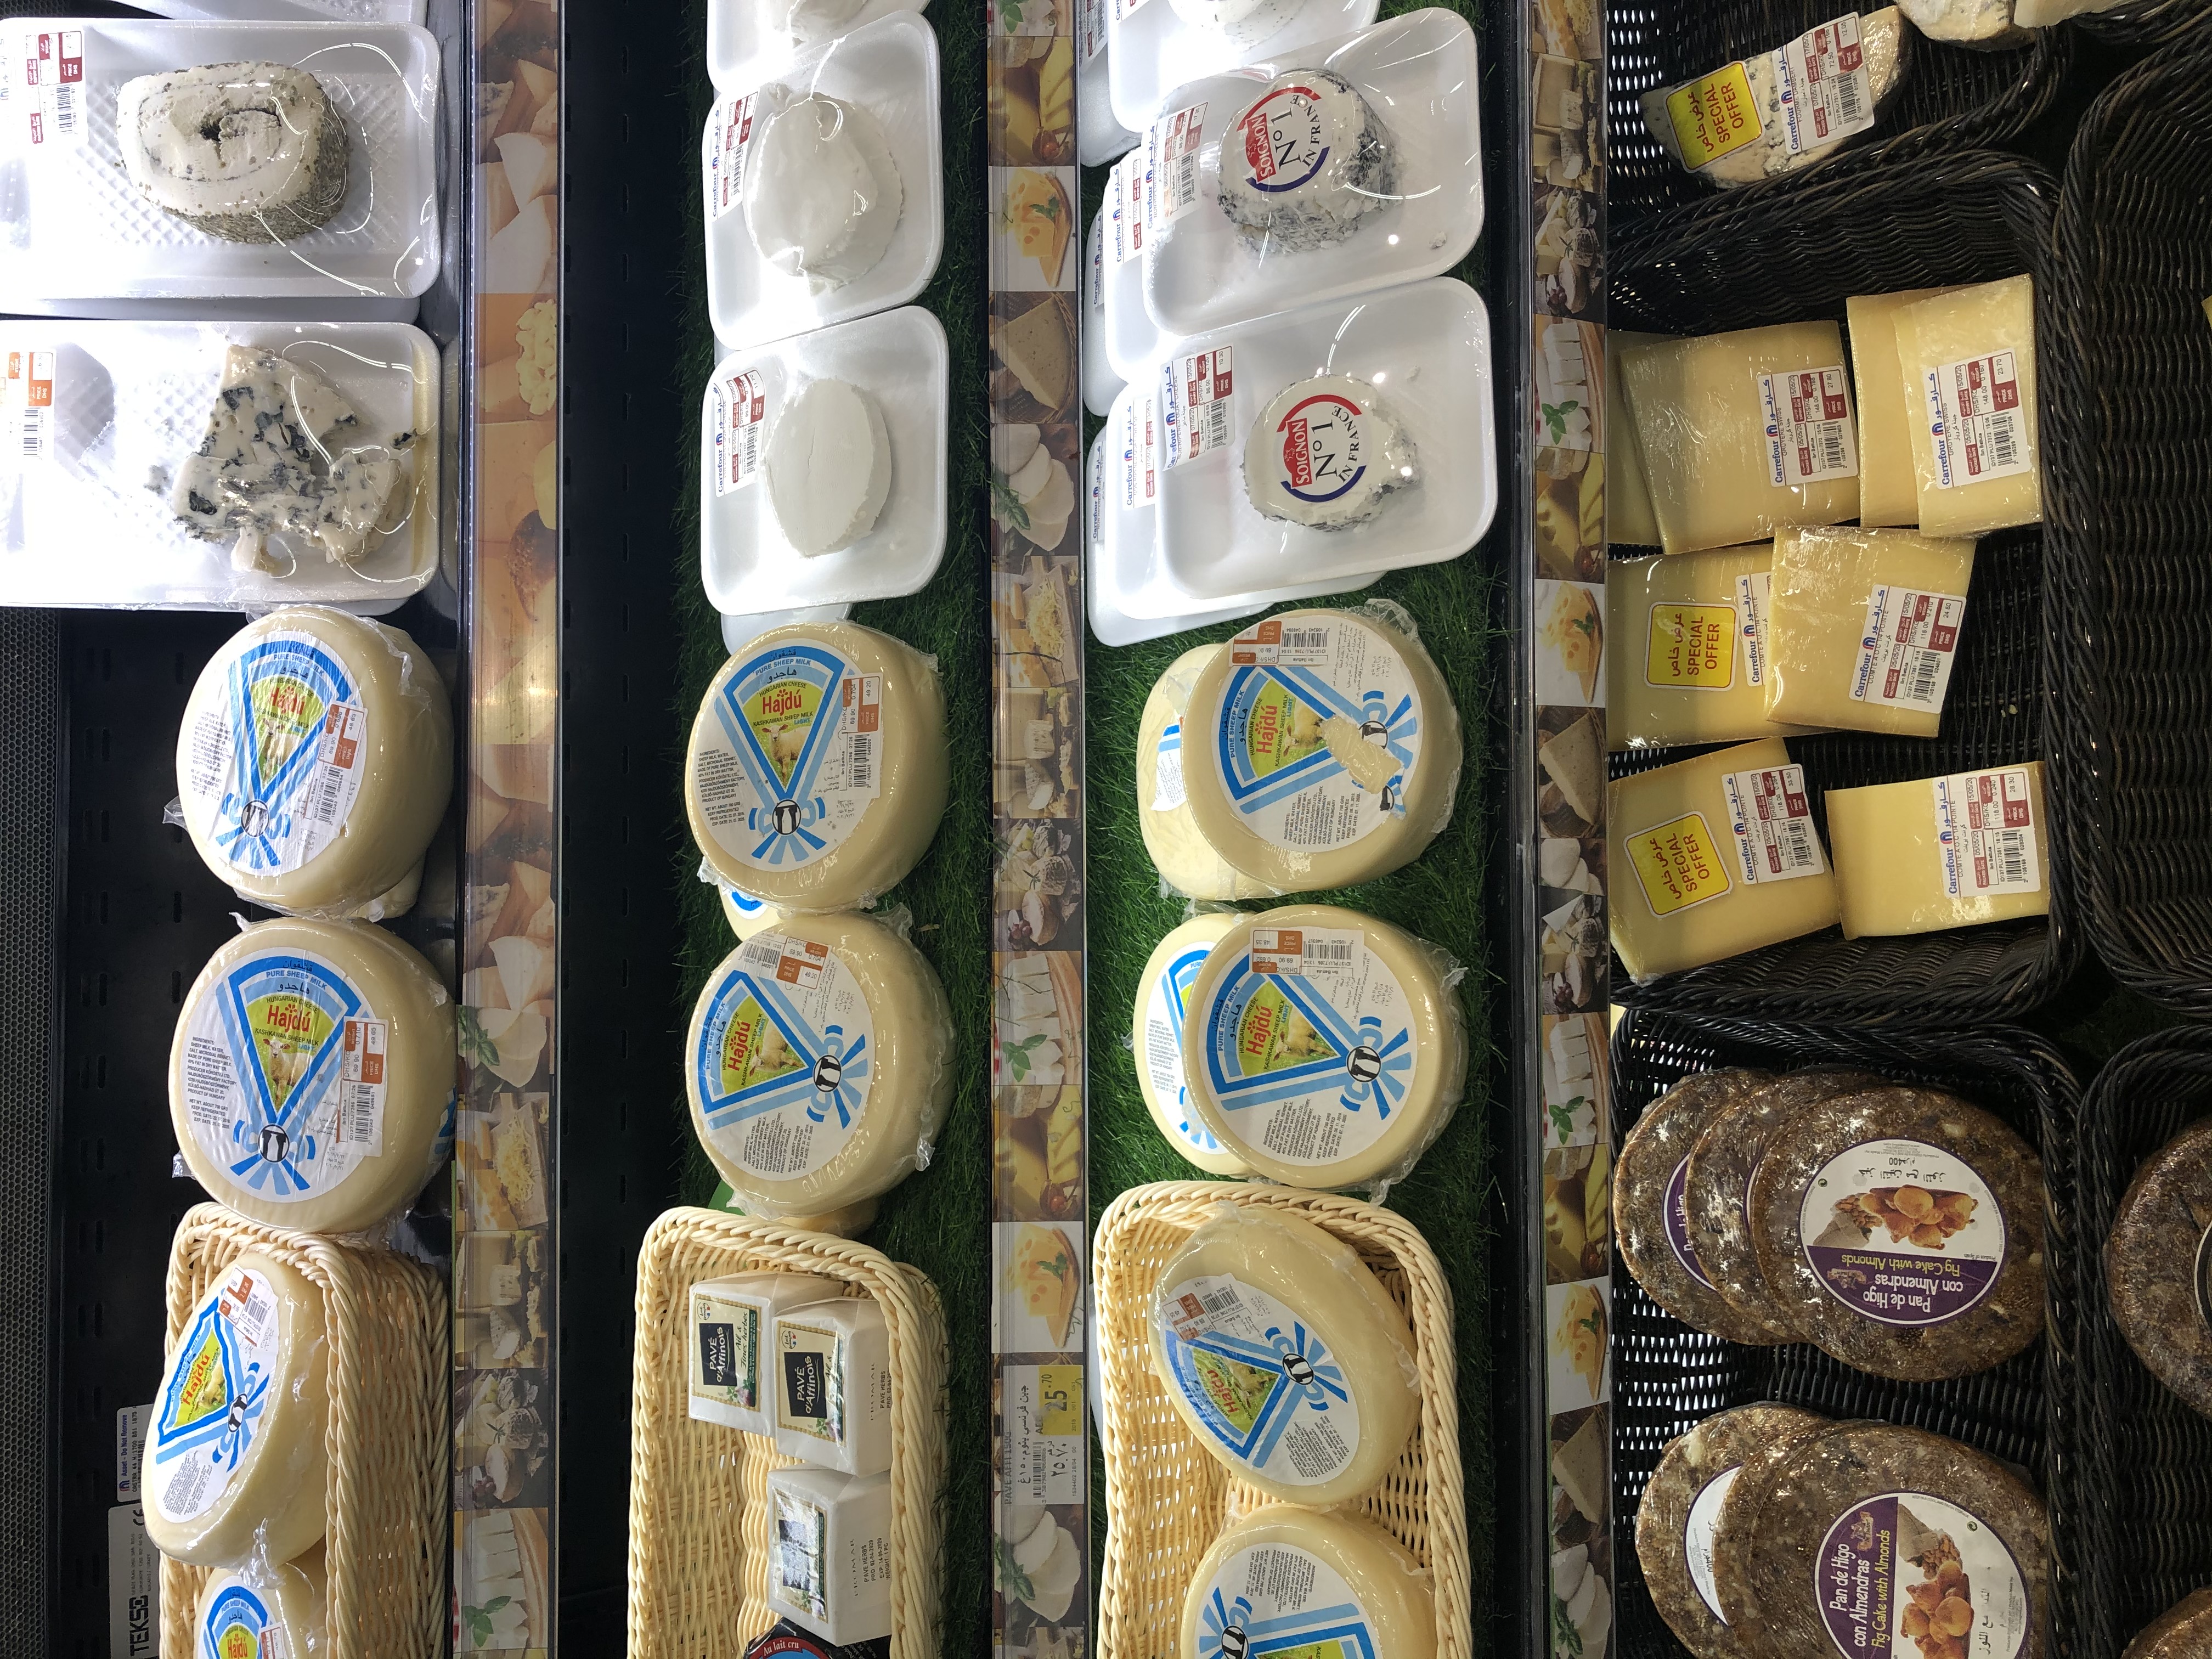 Magyar Hajdú sajt a sajtpultban. Ez a sajt még a legkisebb sarki boltban is megtalálható, akkora sláger!